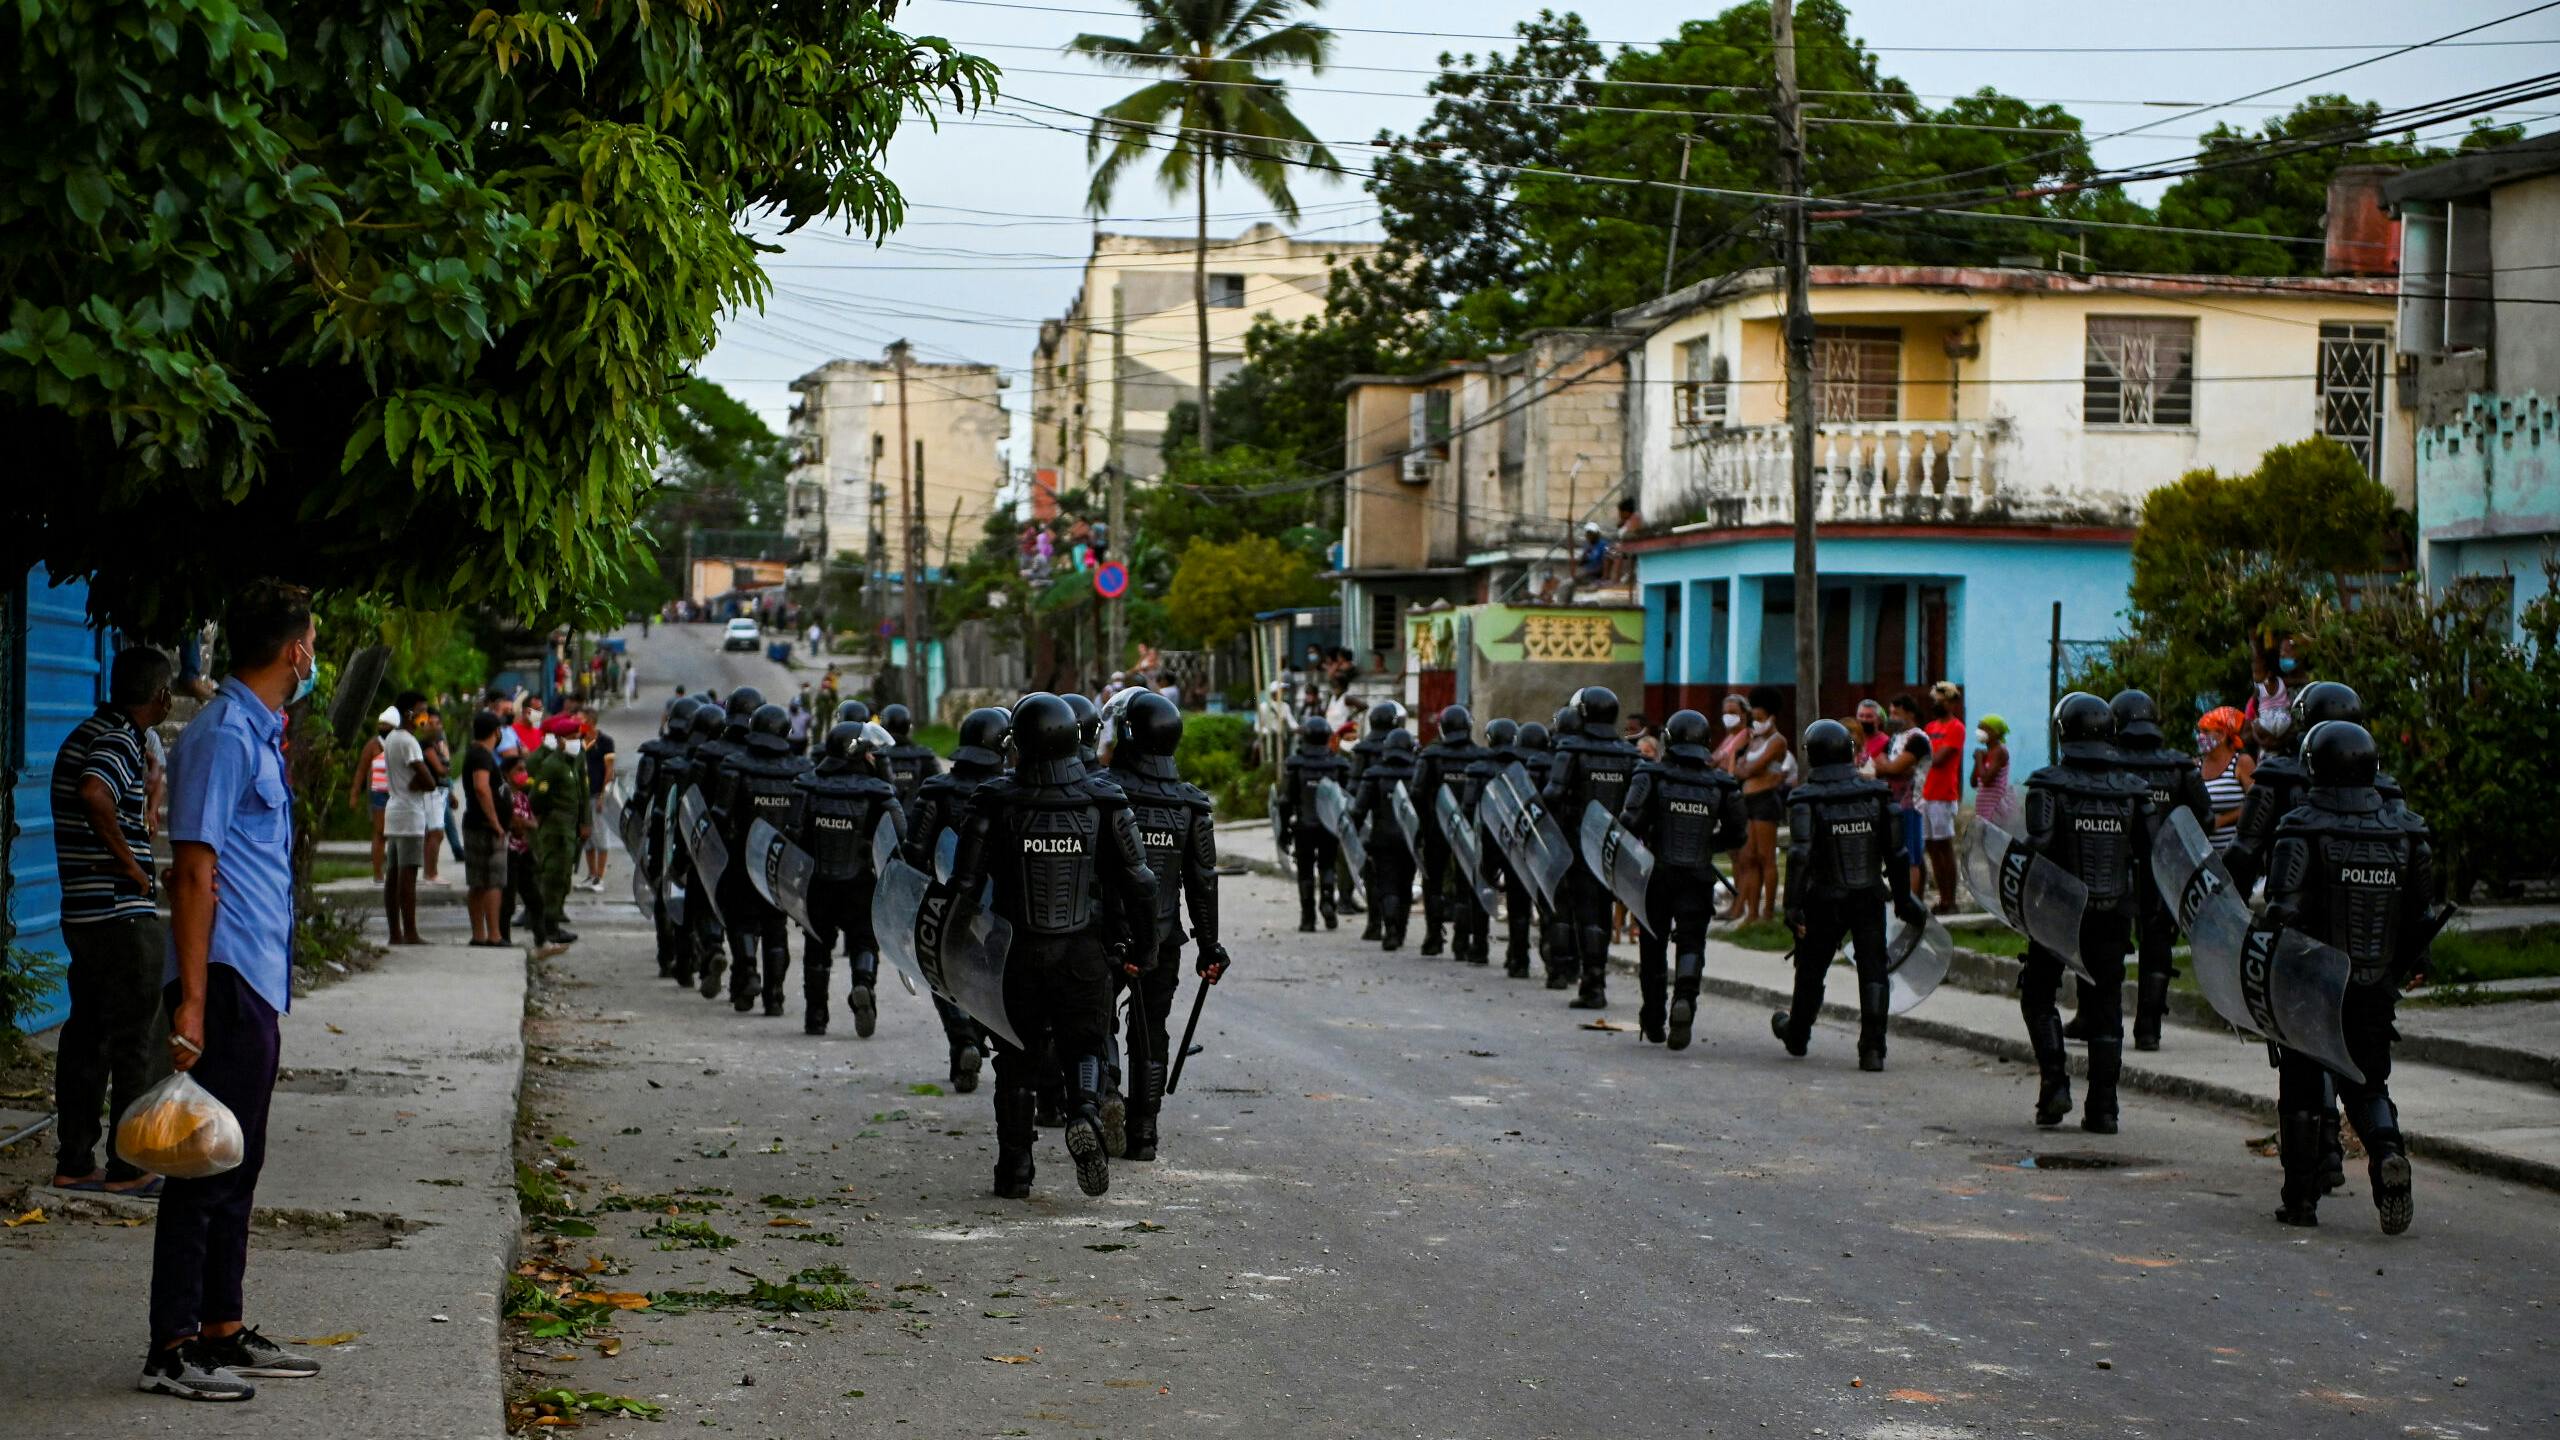 De ordepolitie treedt hard op tijdens de demonstraties in Cuba.